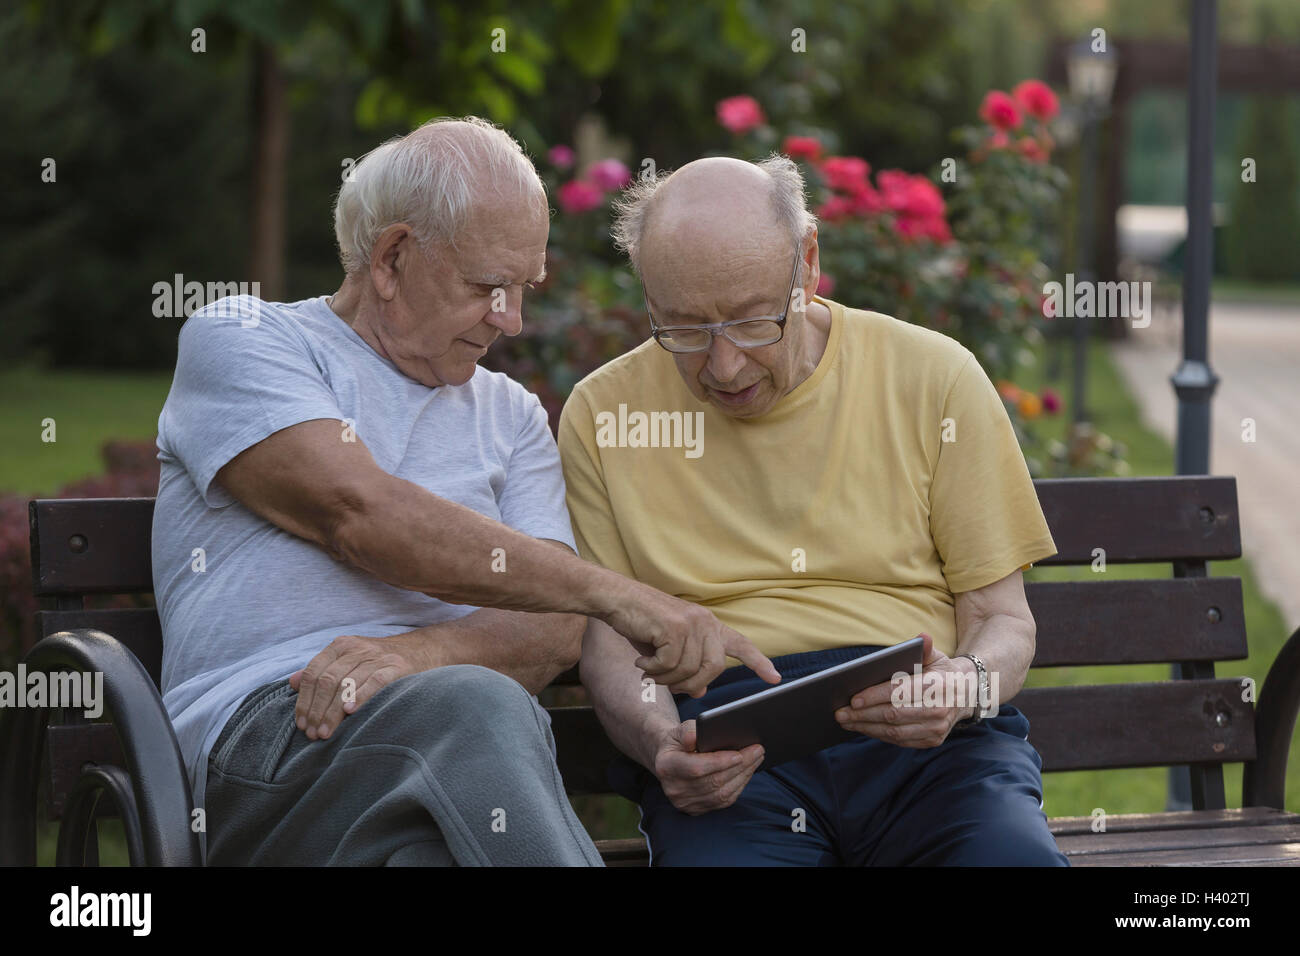 Senior woman zeigen und zeigt Freund auf Parkbank Stockfoto